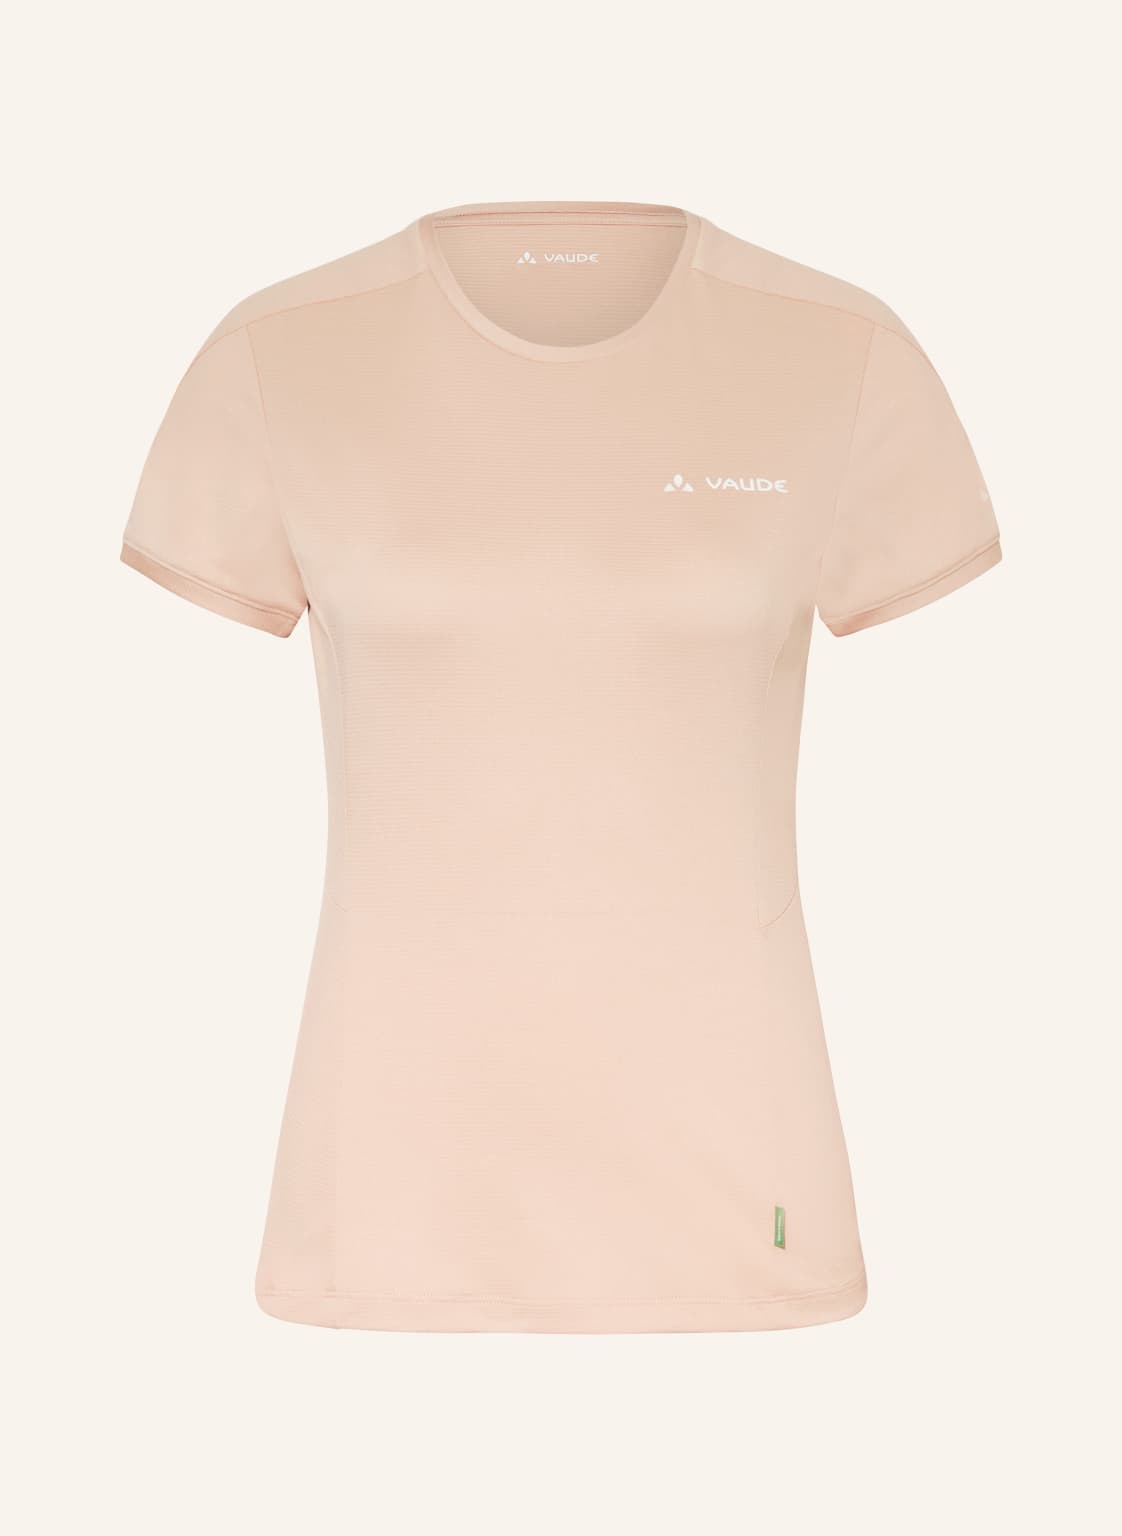 Vaude T-Shirt Elope rosa von Vaude